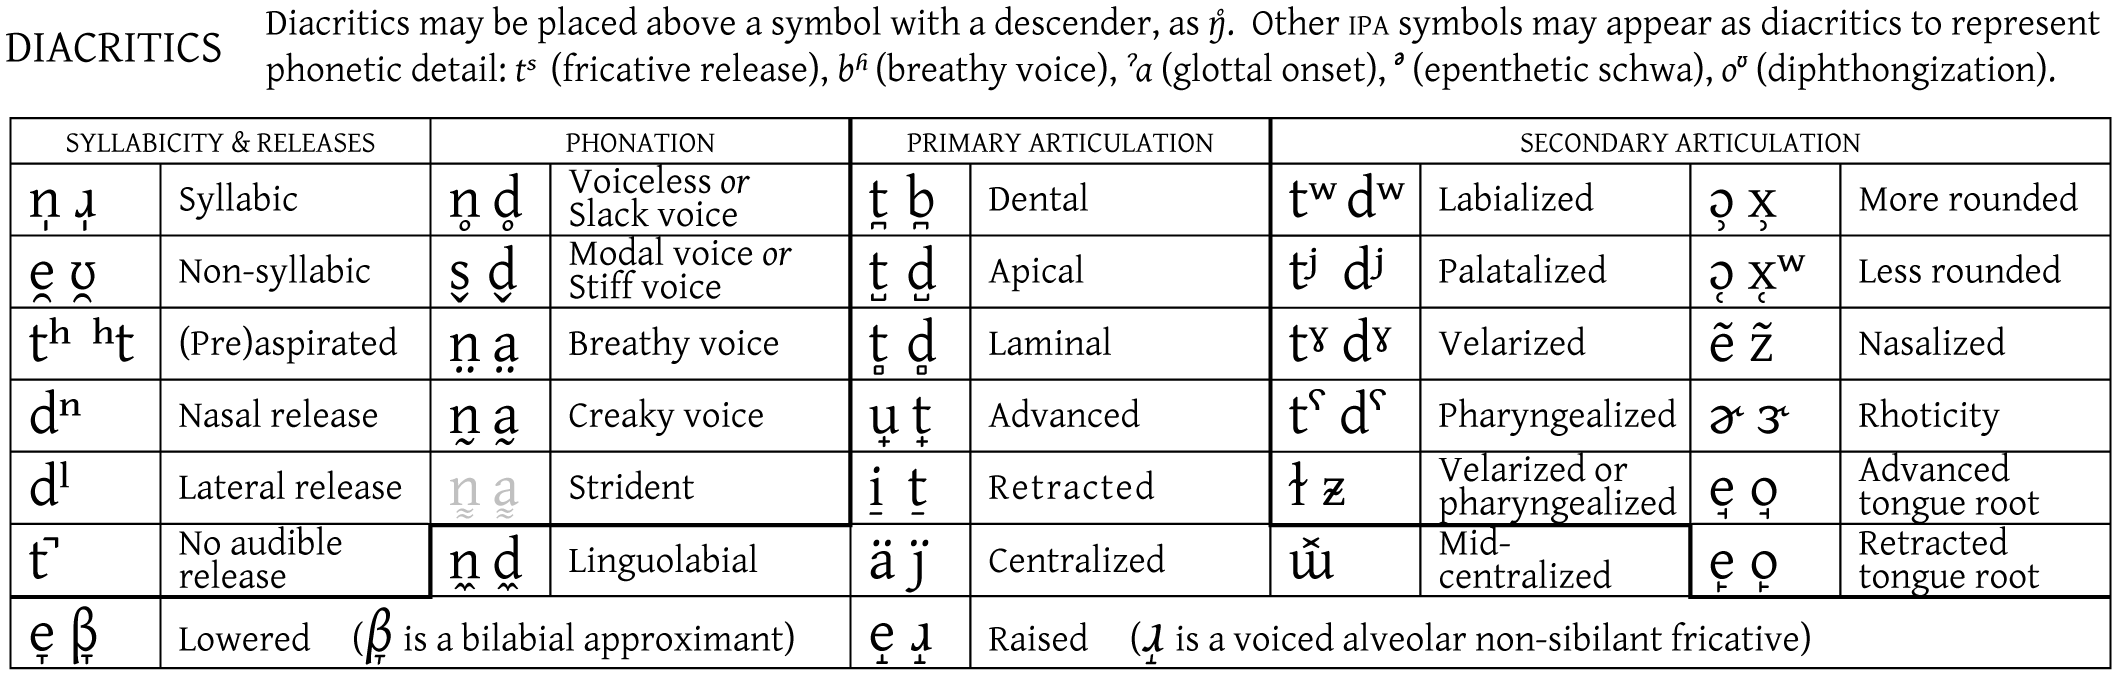 List Of Diacritical Marks